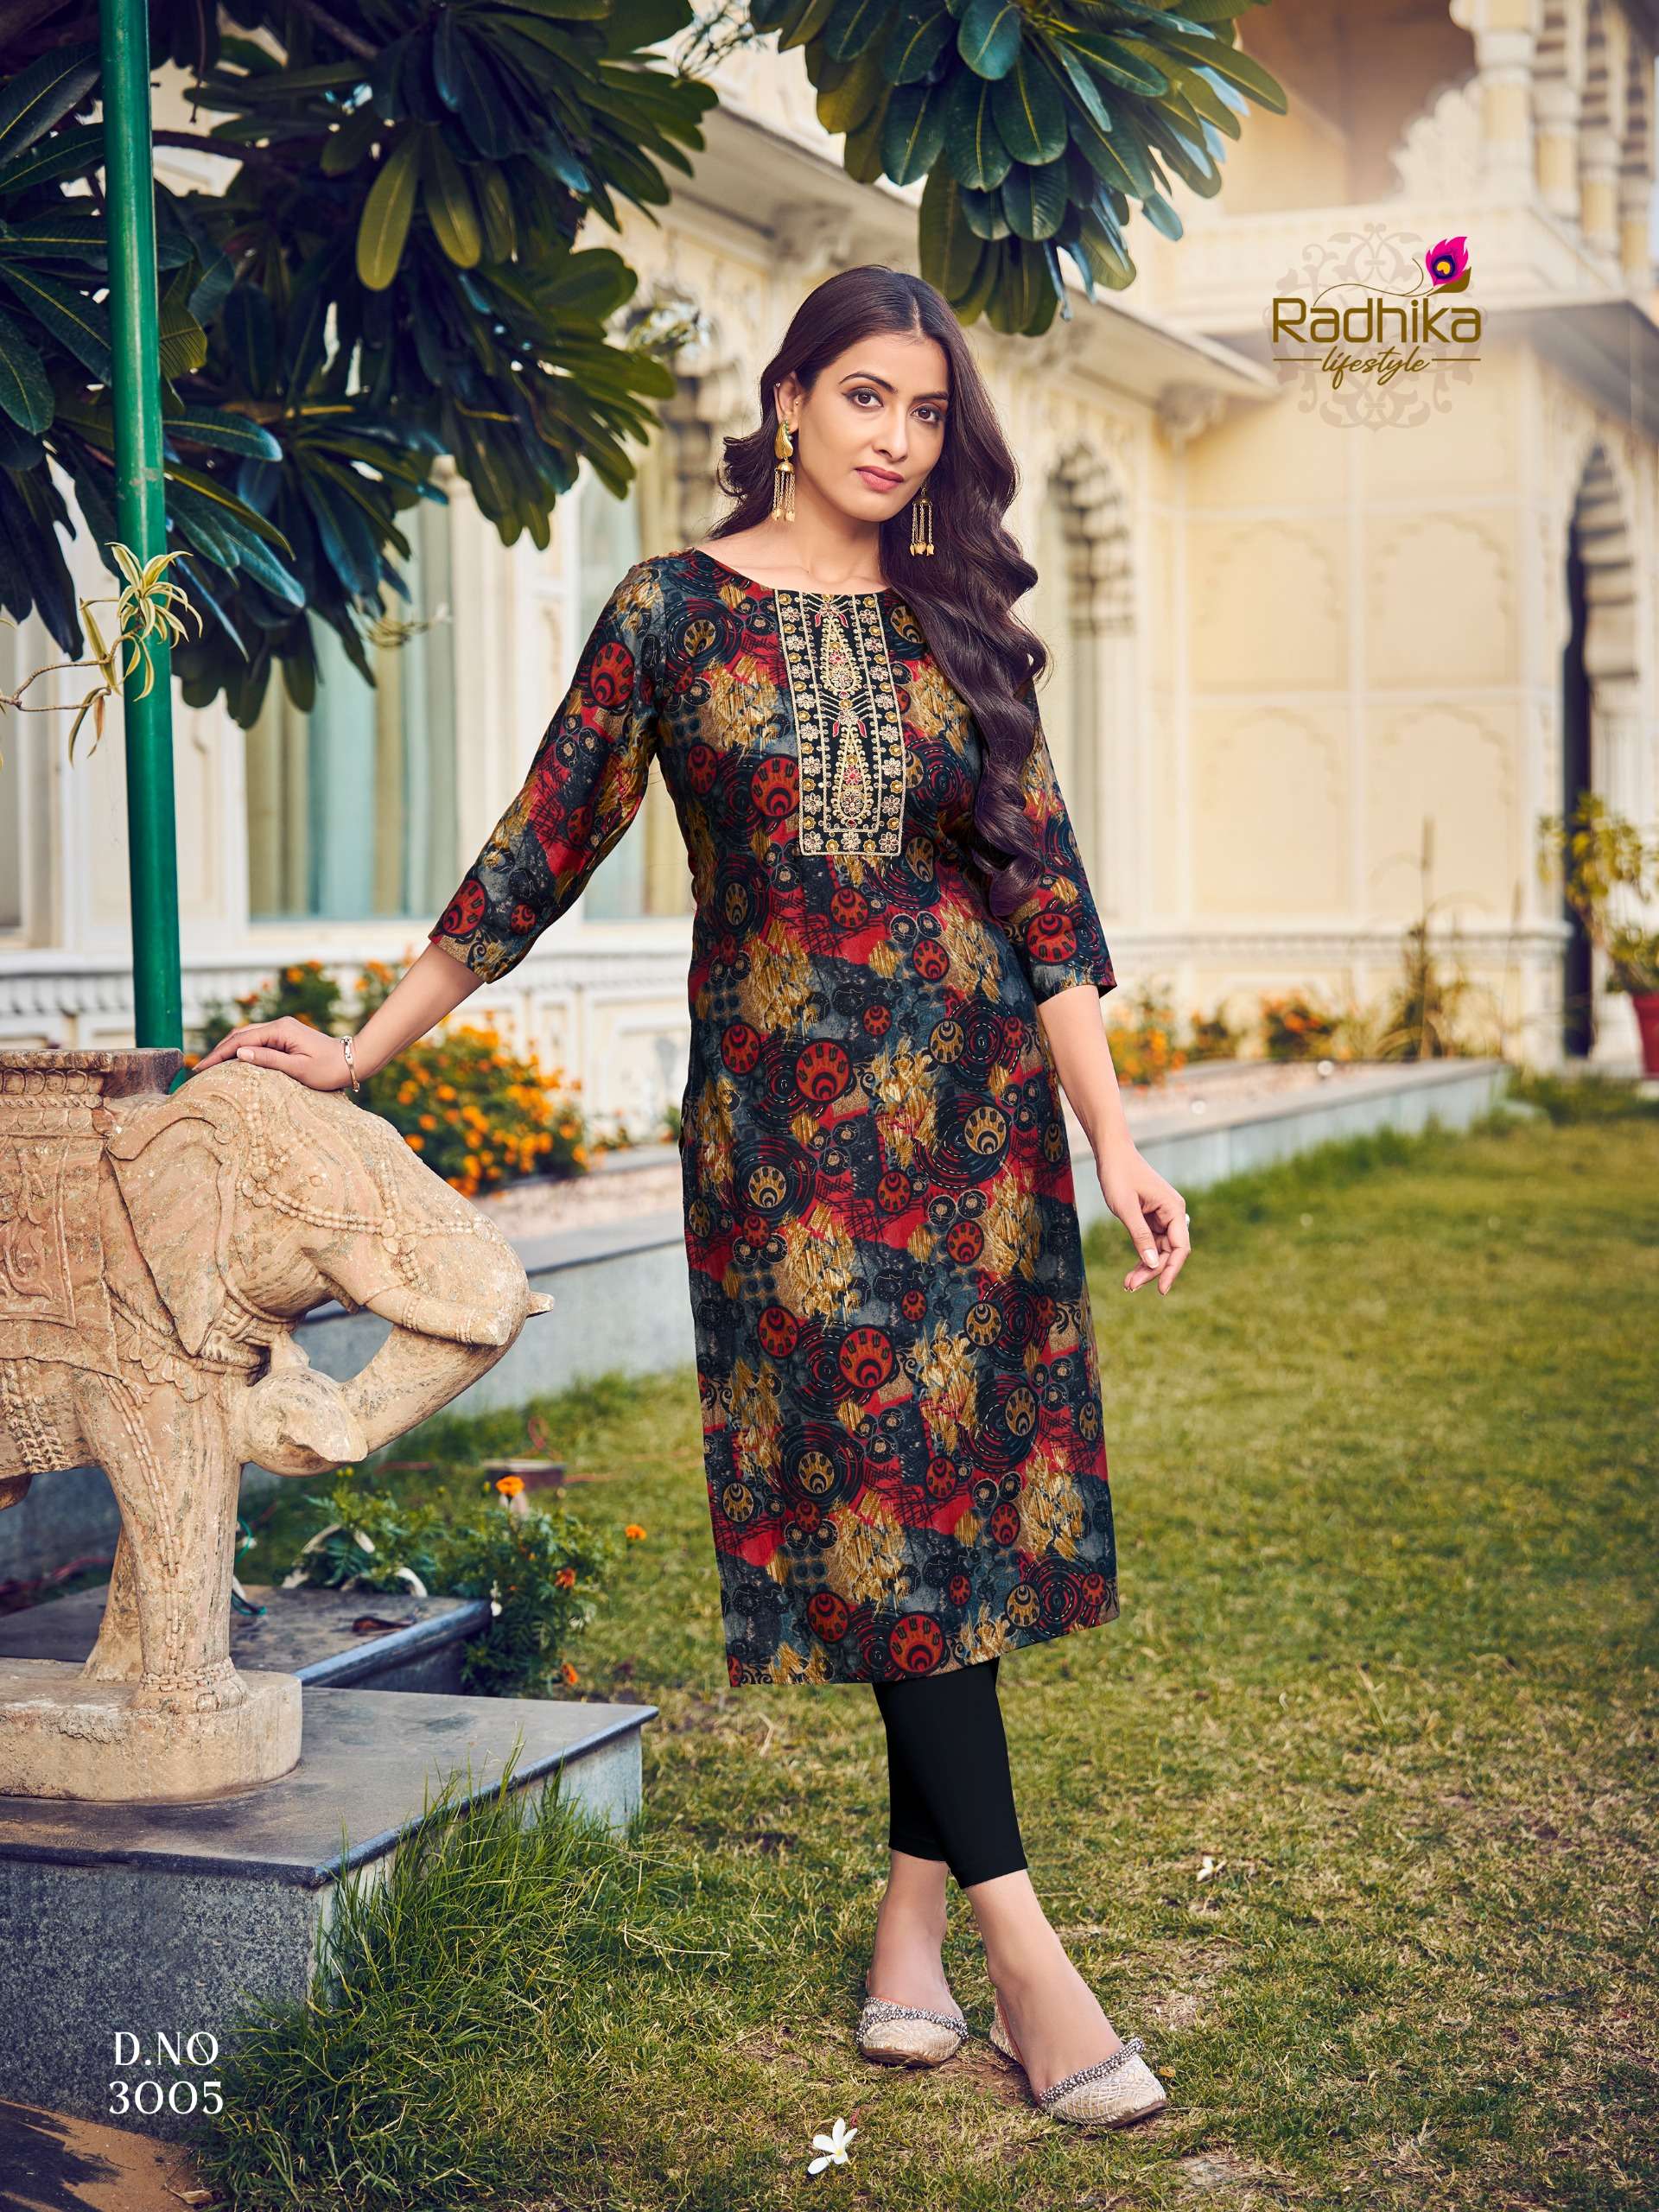 radhika lifestyle charming vol-3 3001-3010 series designer trending kurti set wholesaler surat gujarat